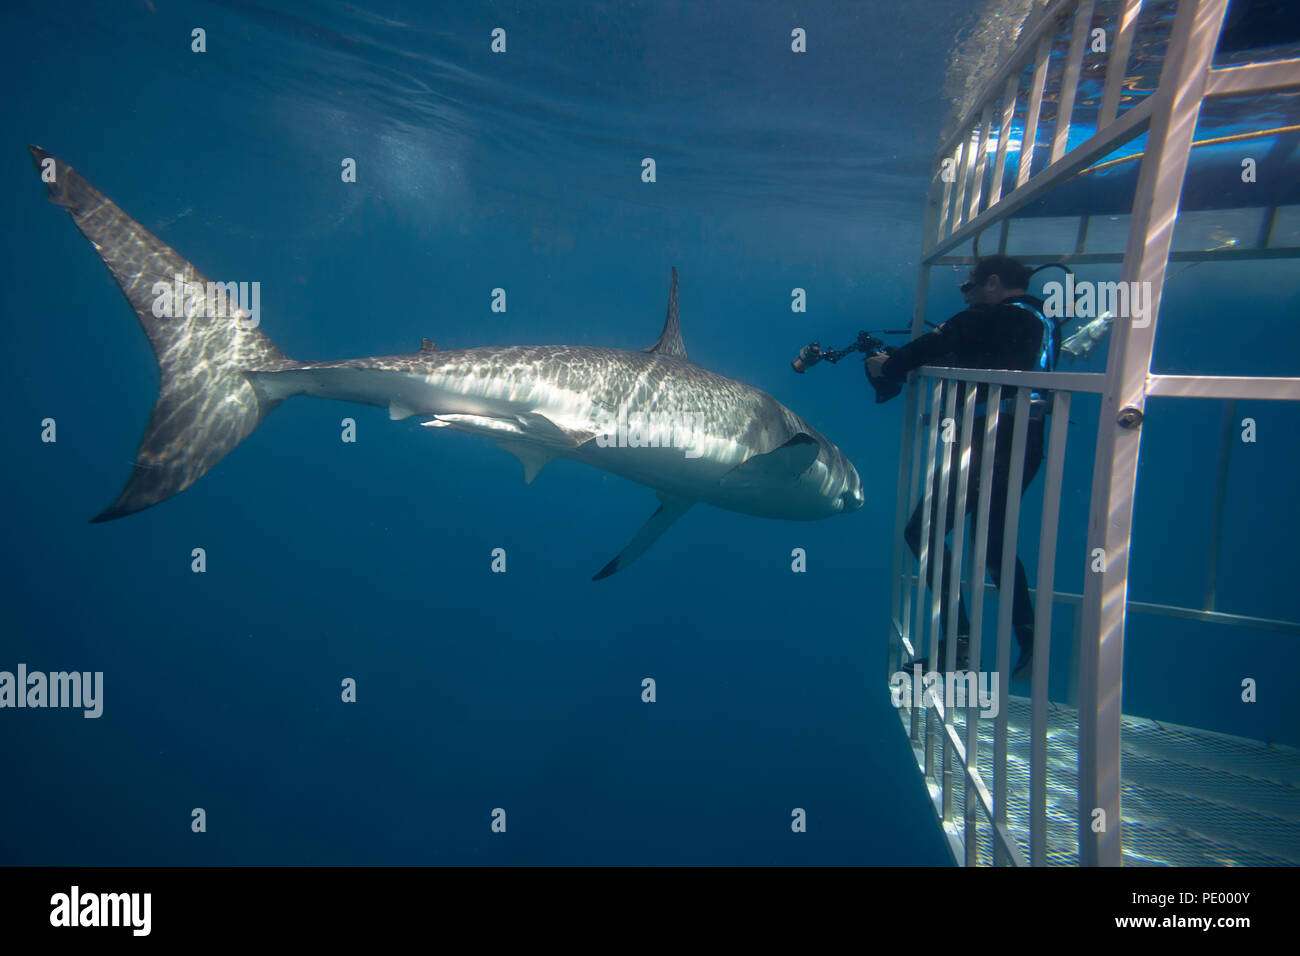 Ce grand requin blanc, Carcharodon carcharias, a fait un pass au plongeur (MR) dans la cage de requins au large de l'île de Guadalupe, au Mexique. Banque D'Images